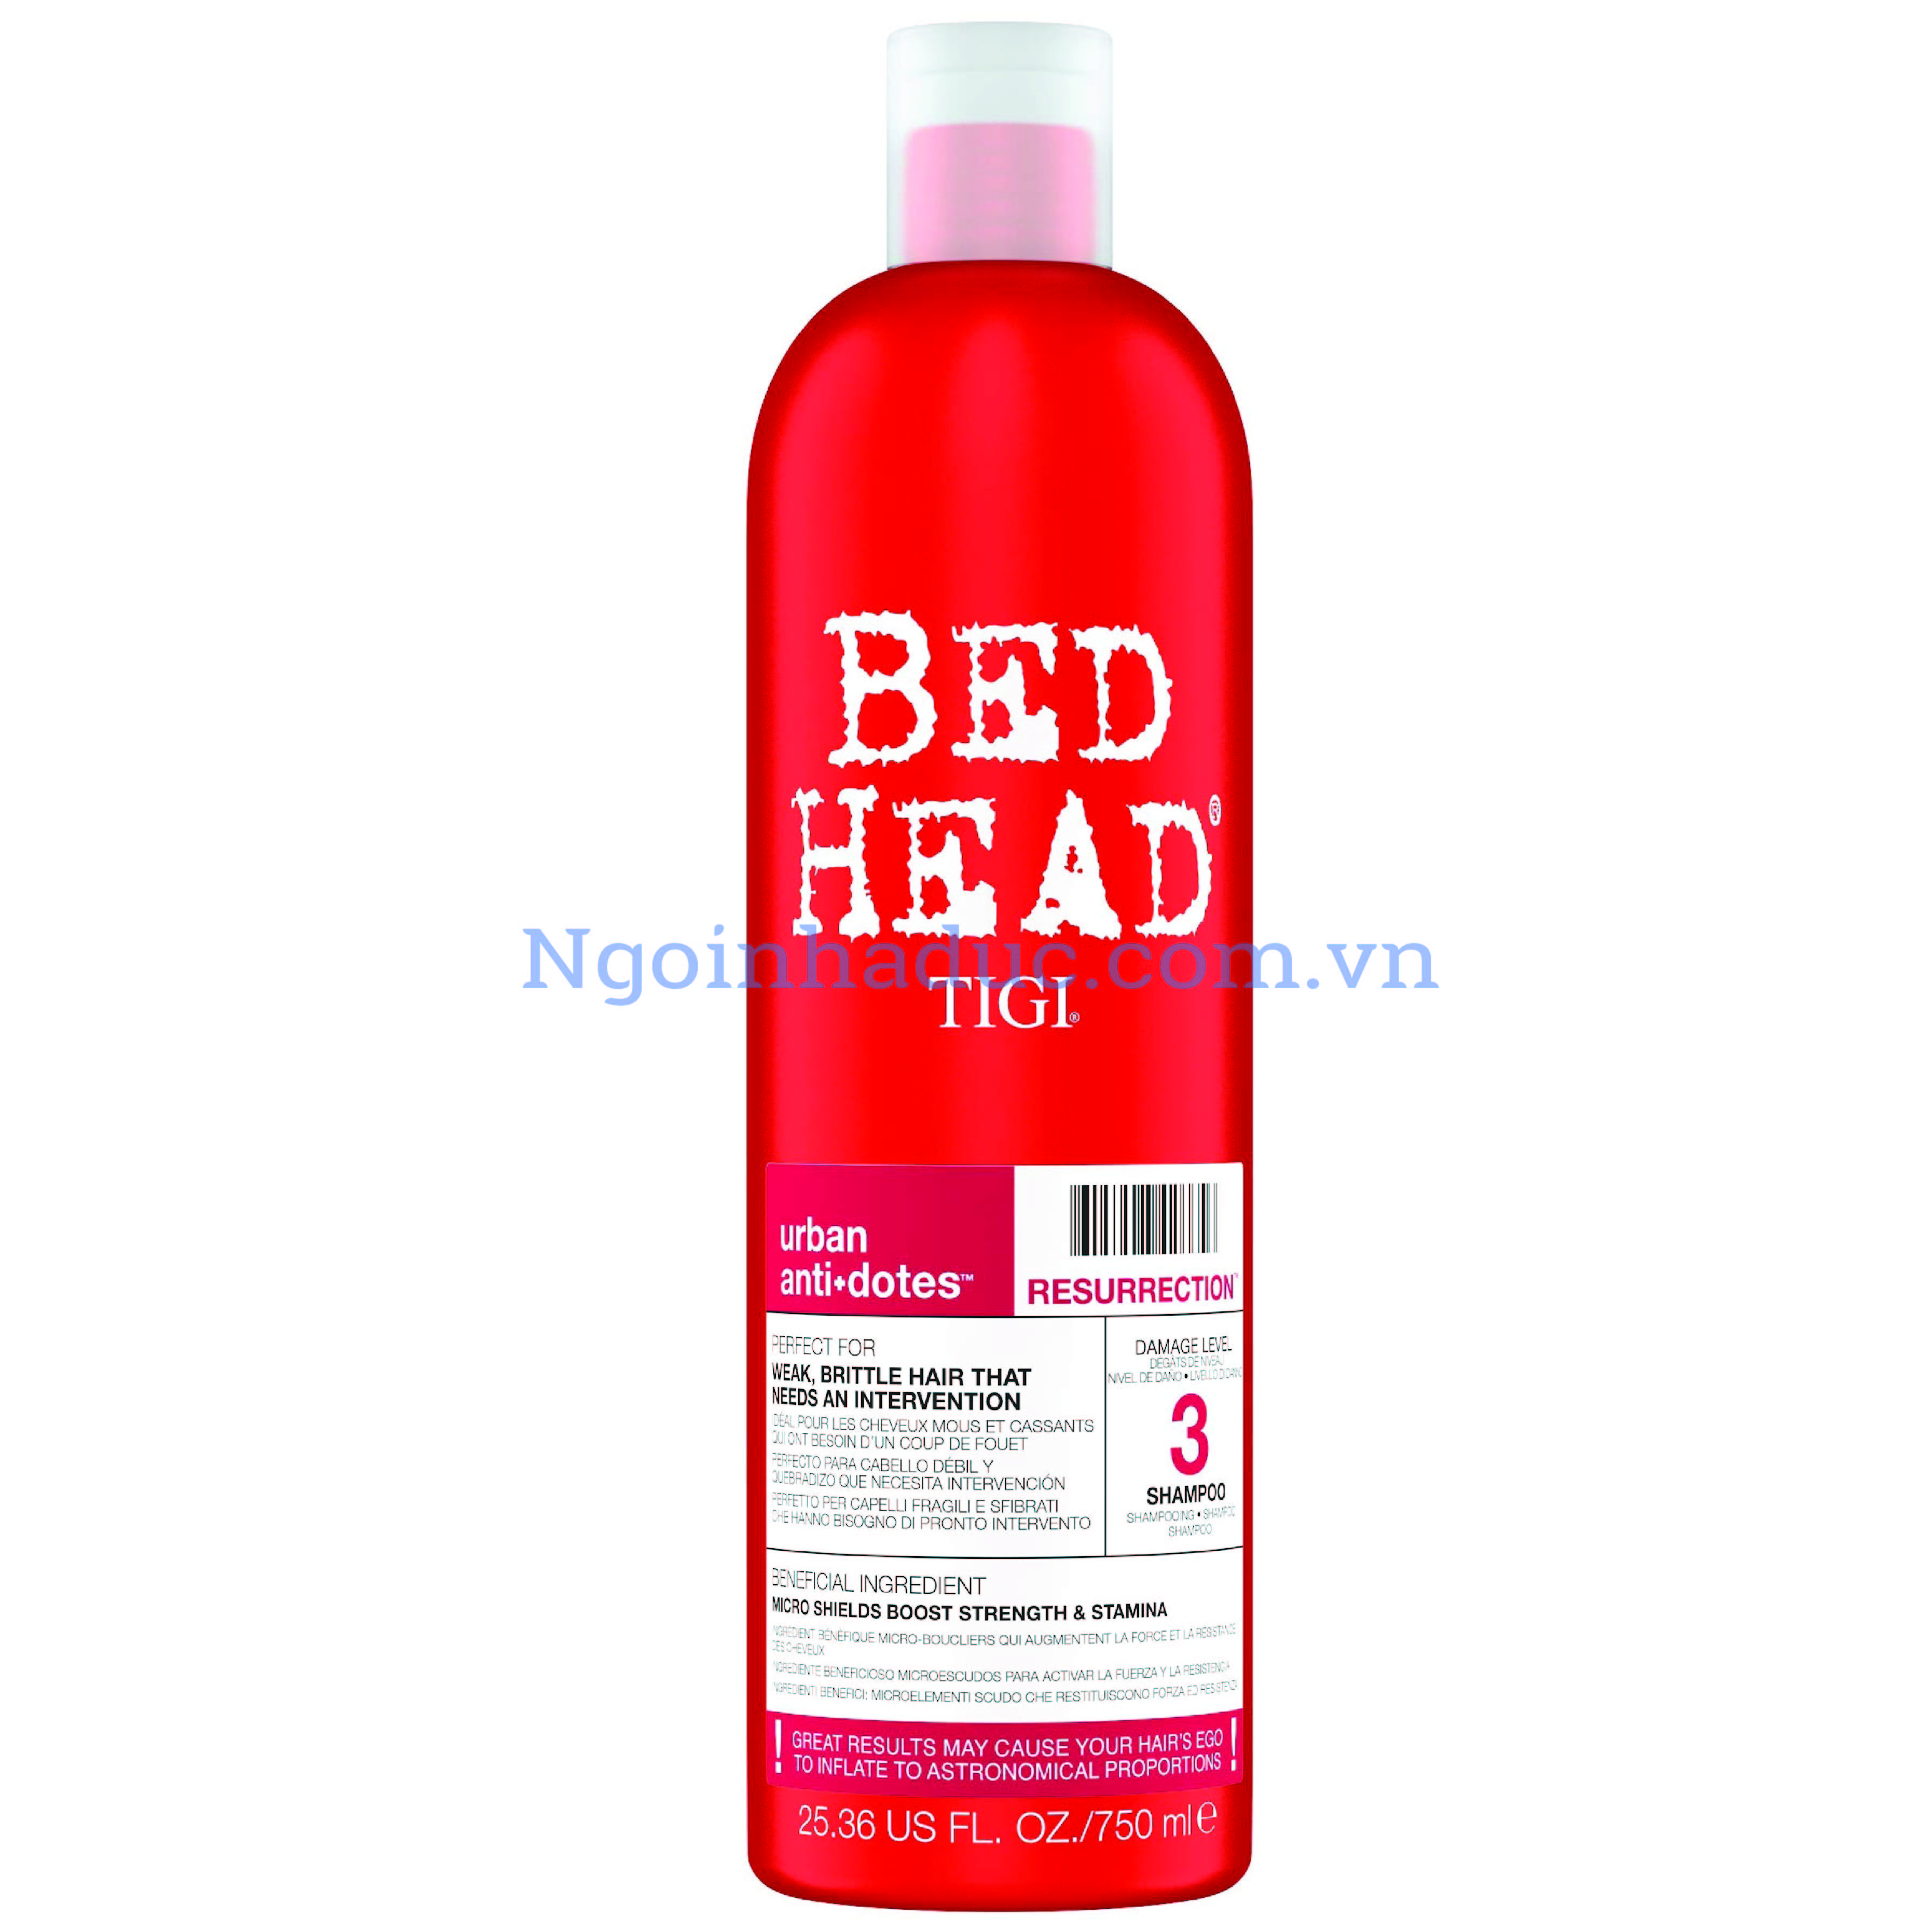 Dầu gội TIGI Bed Head 750ml phục hồi tóc hư tổn - màu đỏ (Mỹ)